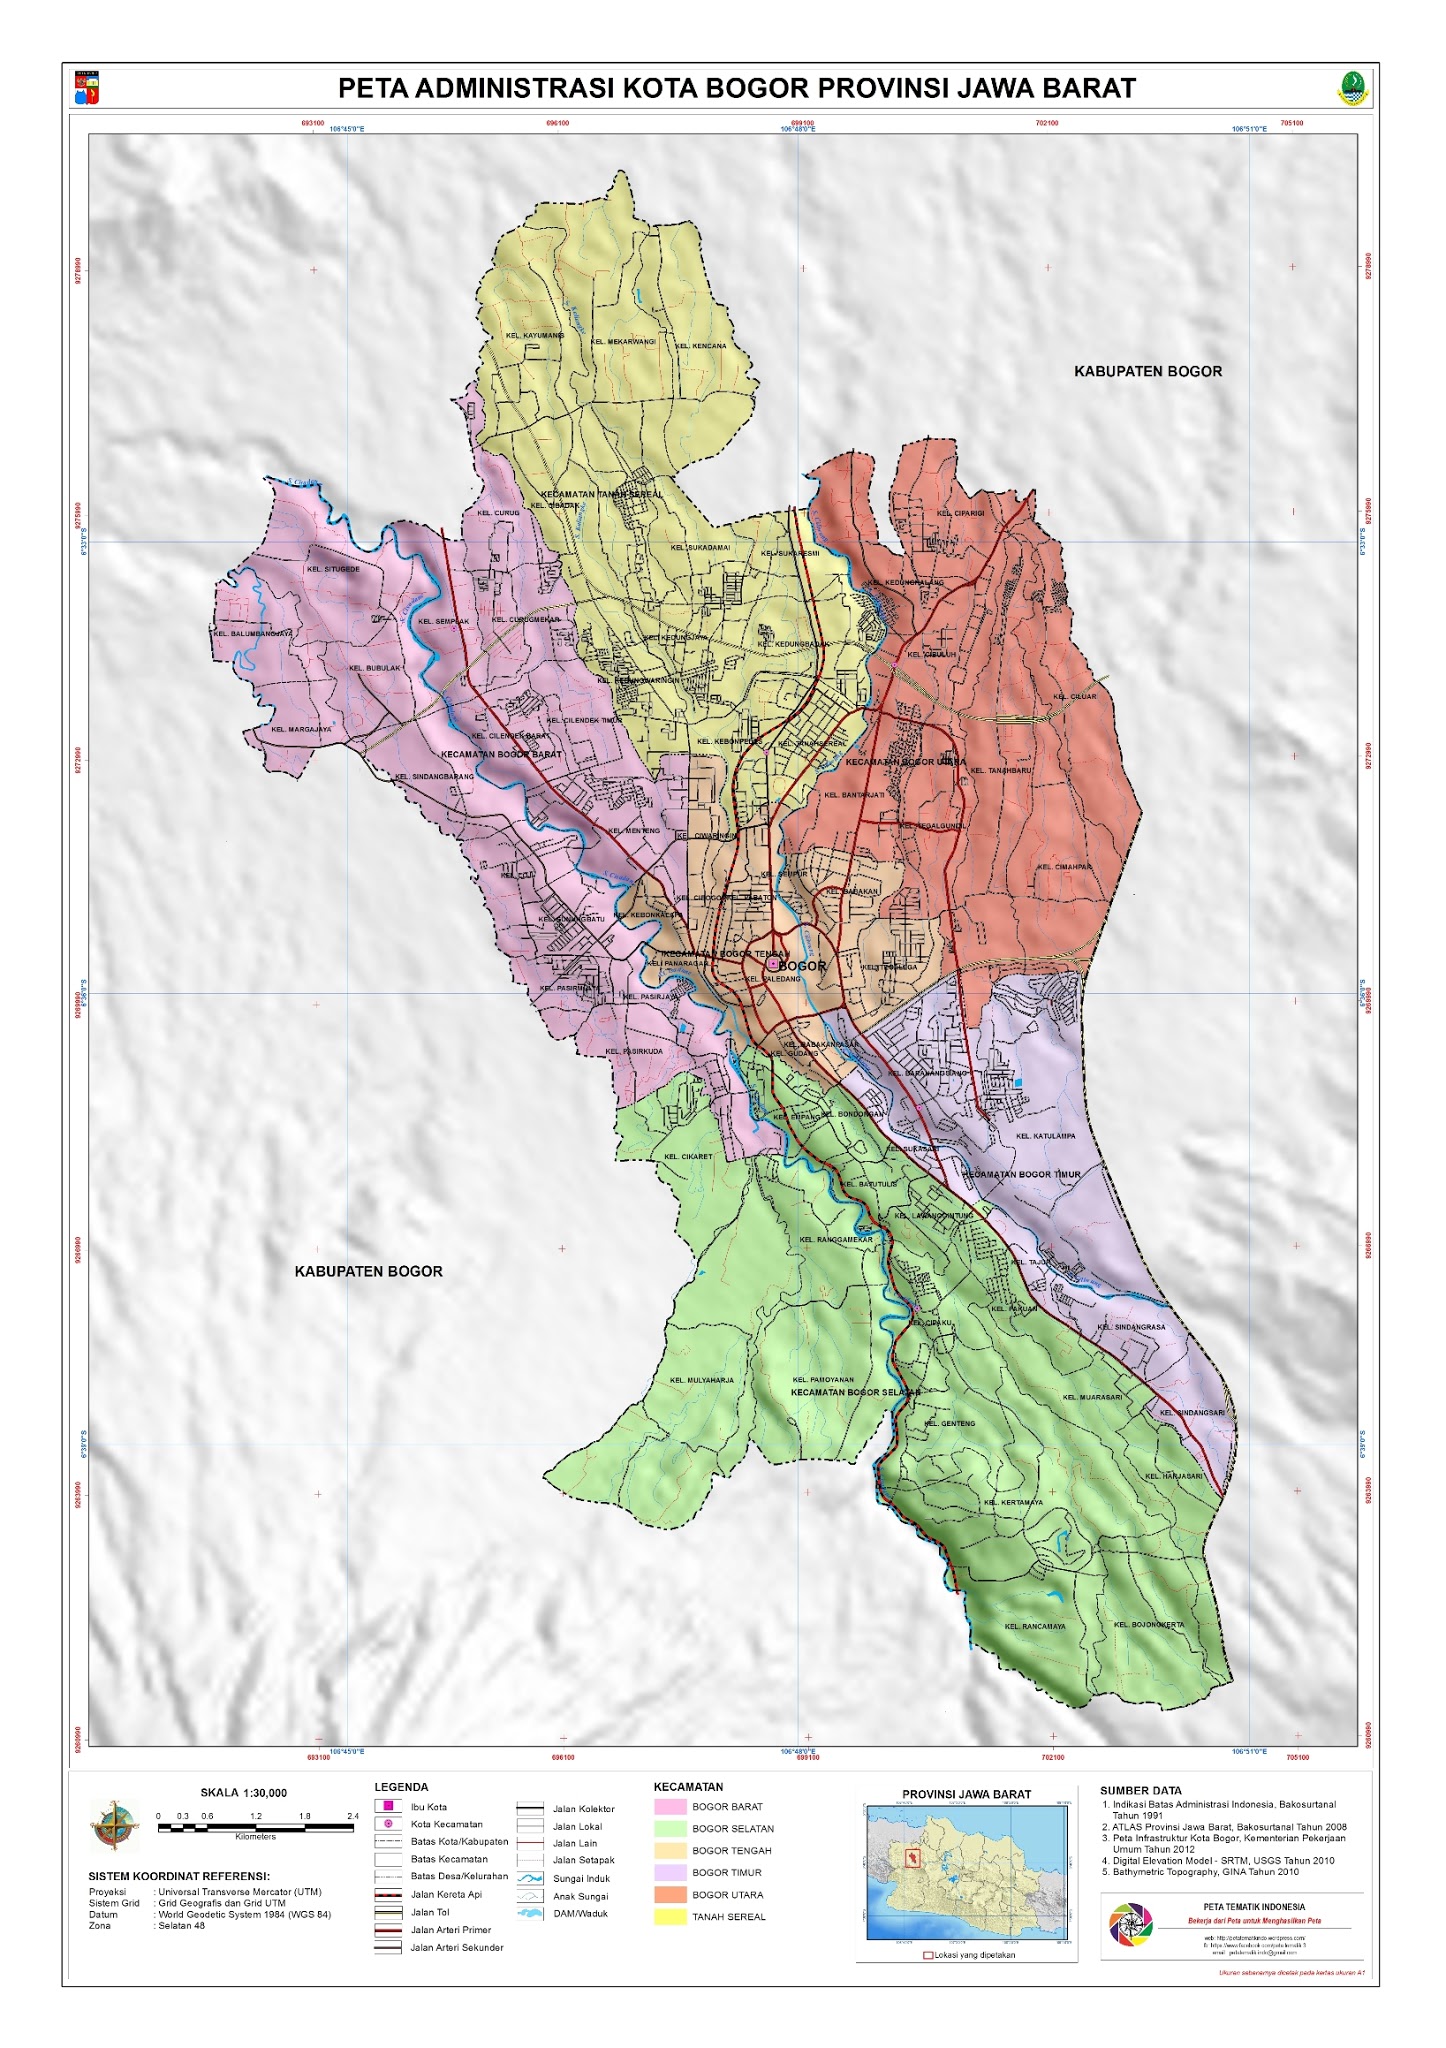 Peta Kota: Peta Kota Bogor